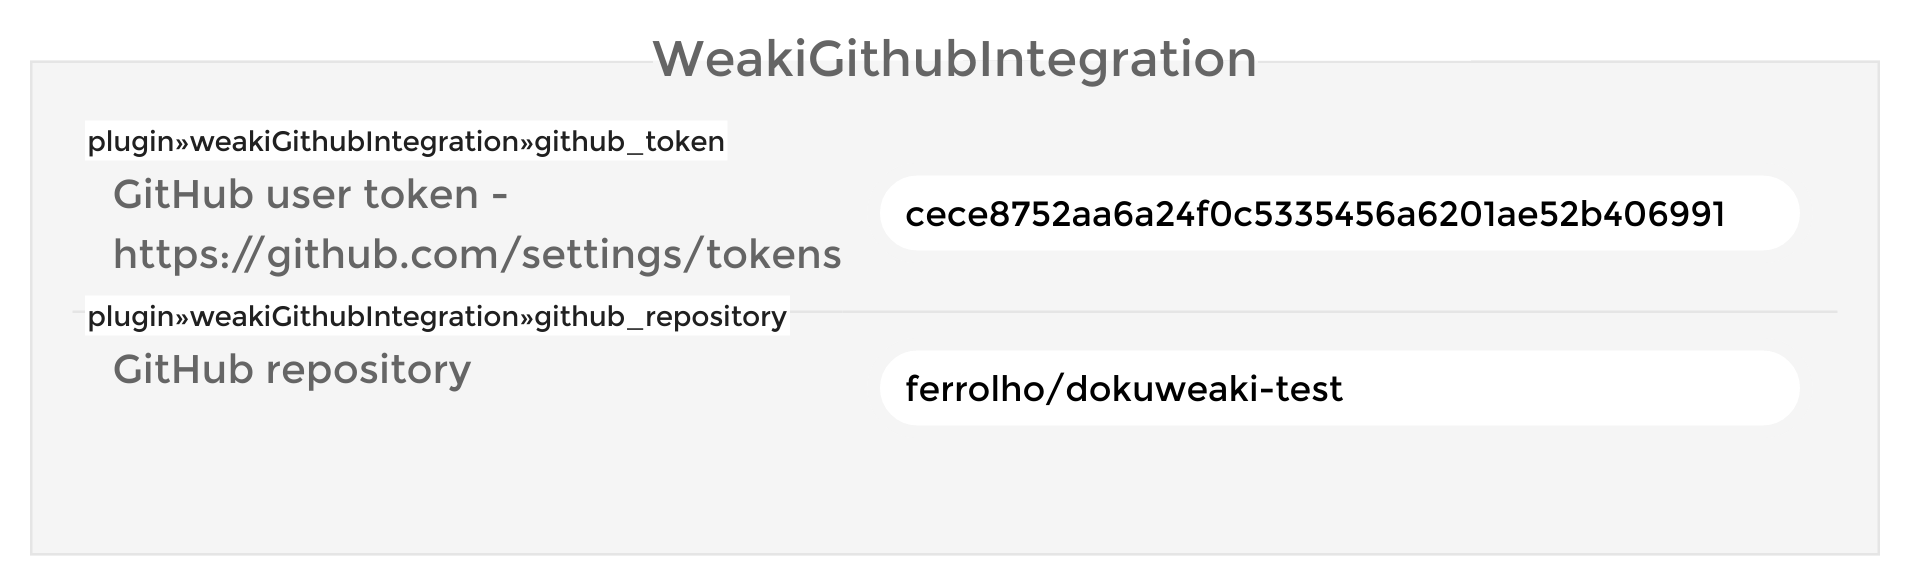 WeakiGithubIntegration settings